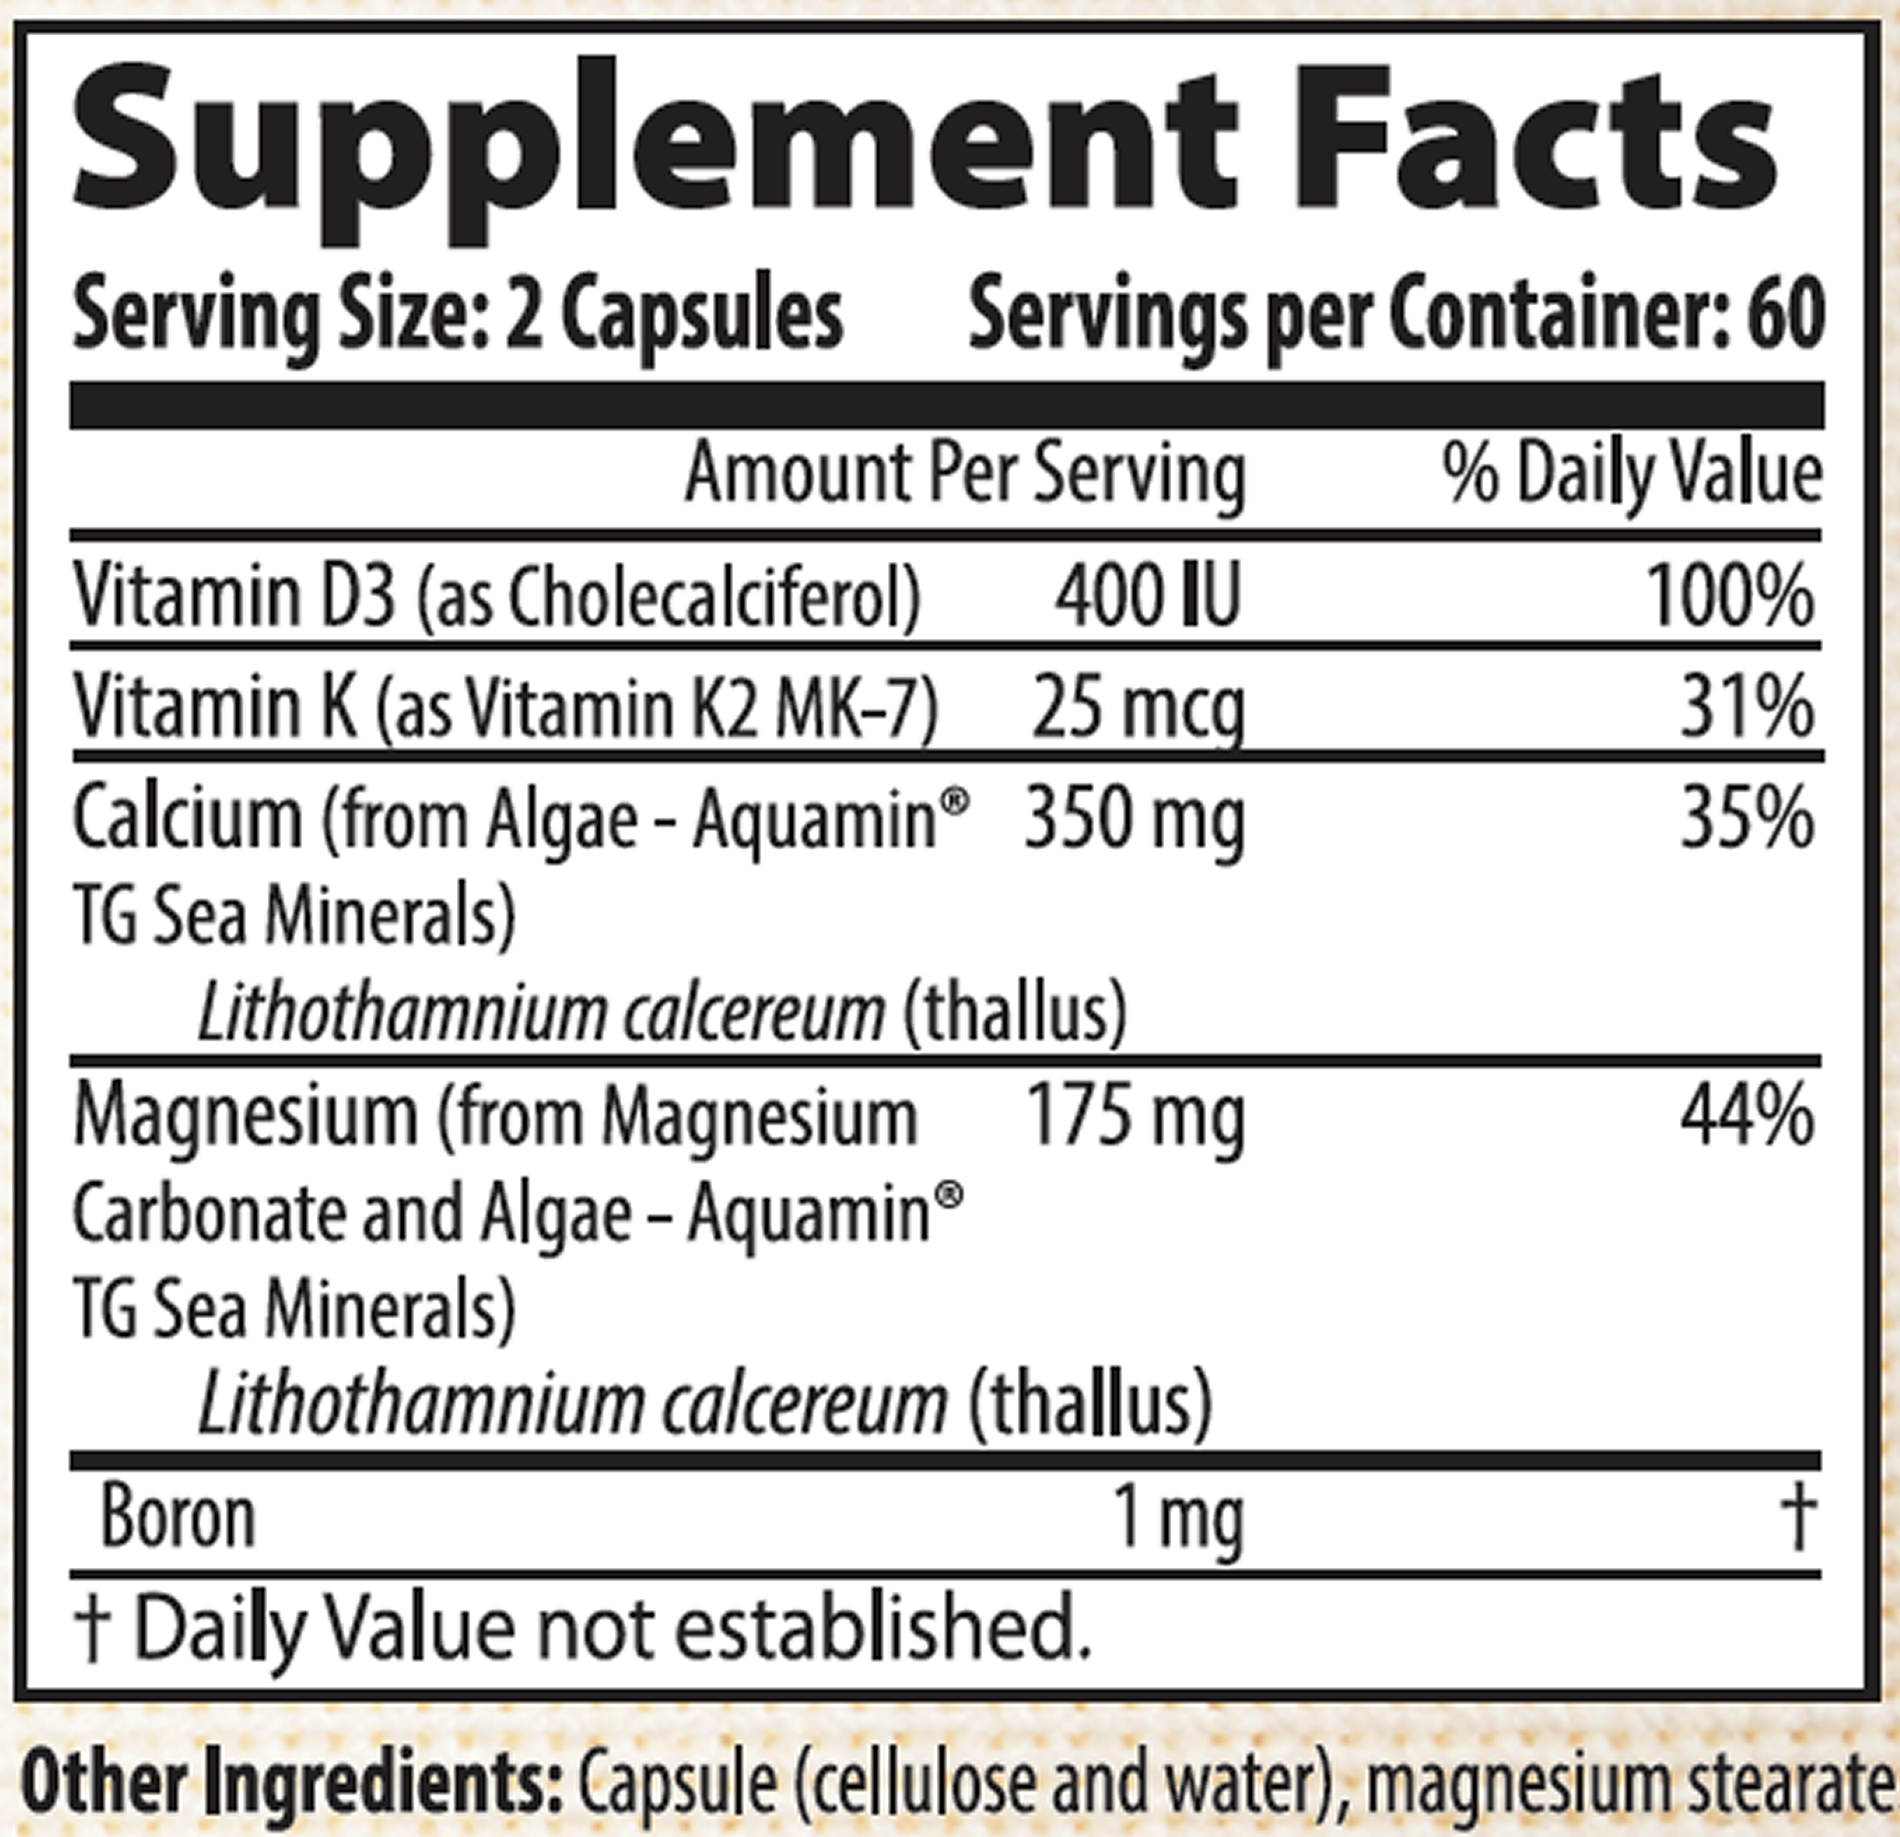 Calcium and Magnesium with Vitamin D3